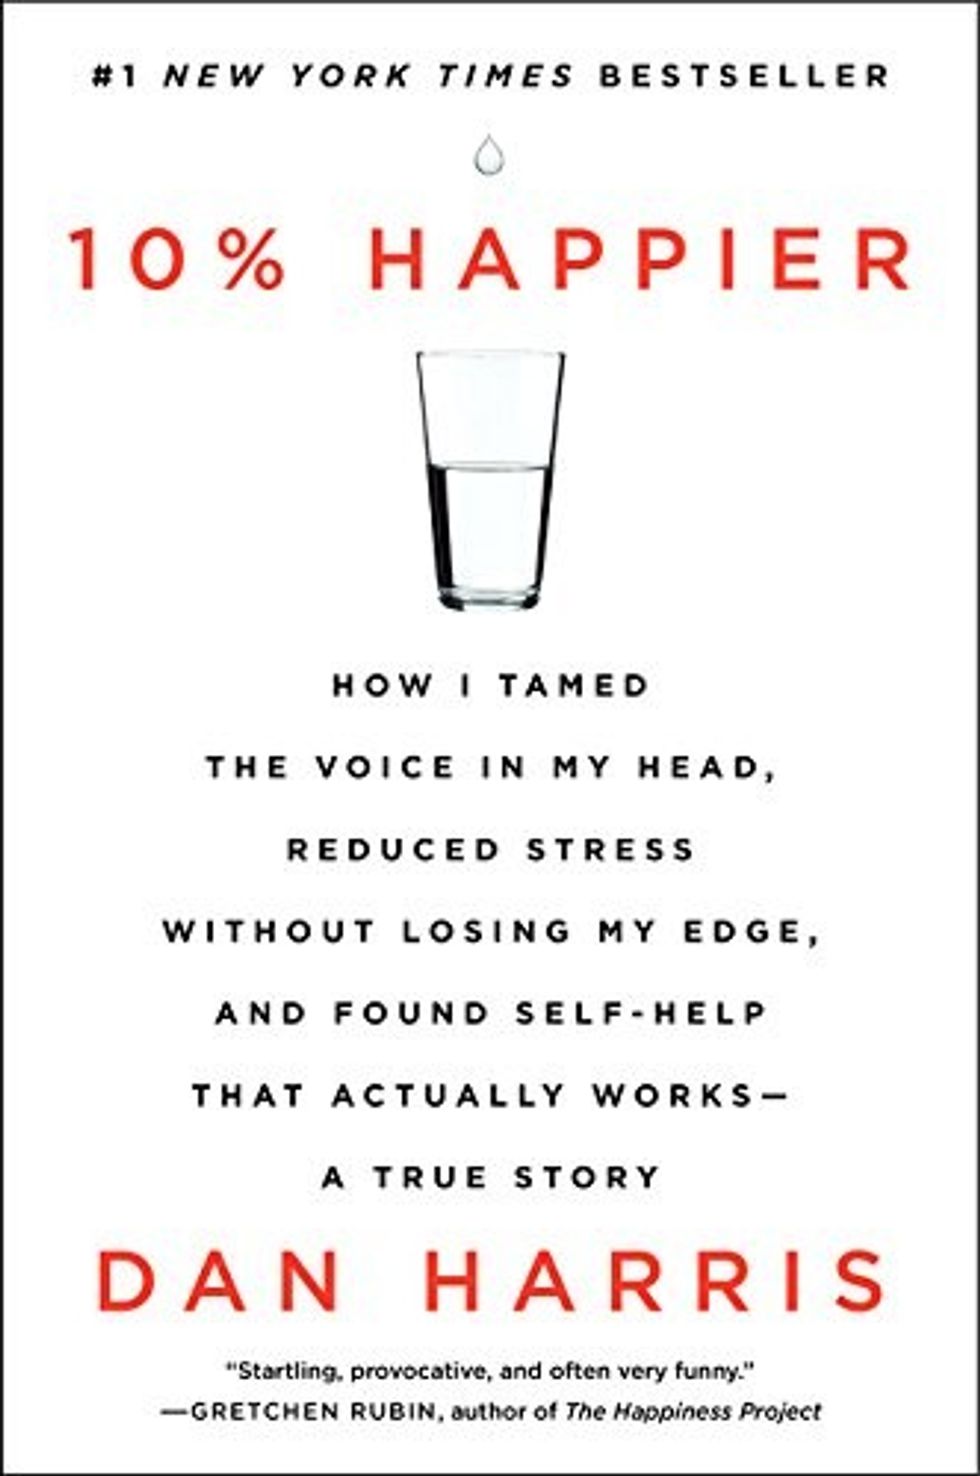 10-percent-happier-meditation-book-for-skeptics-dan-harris